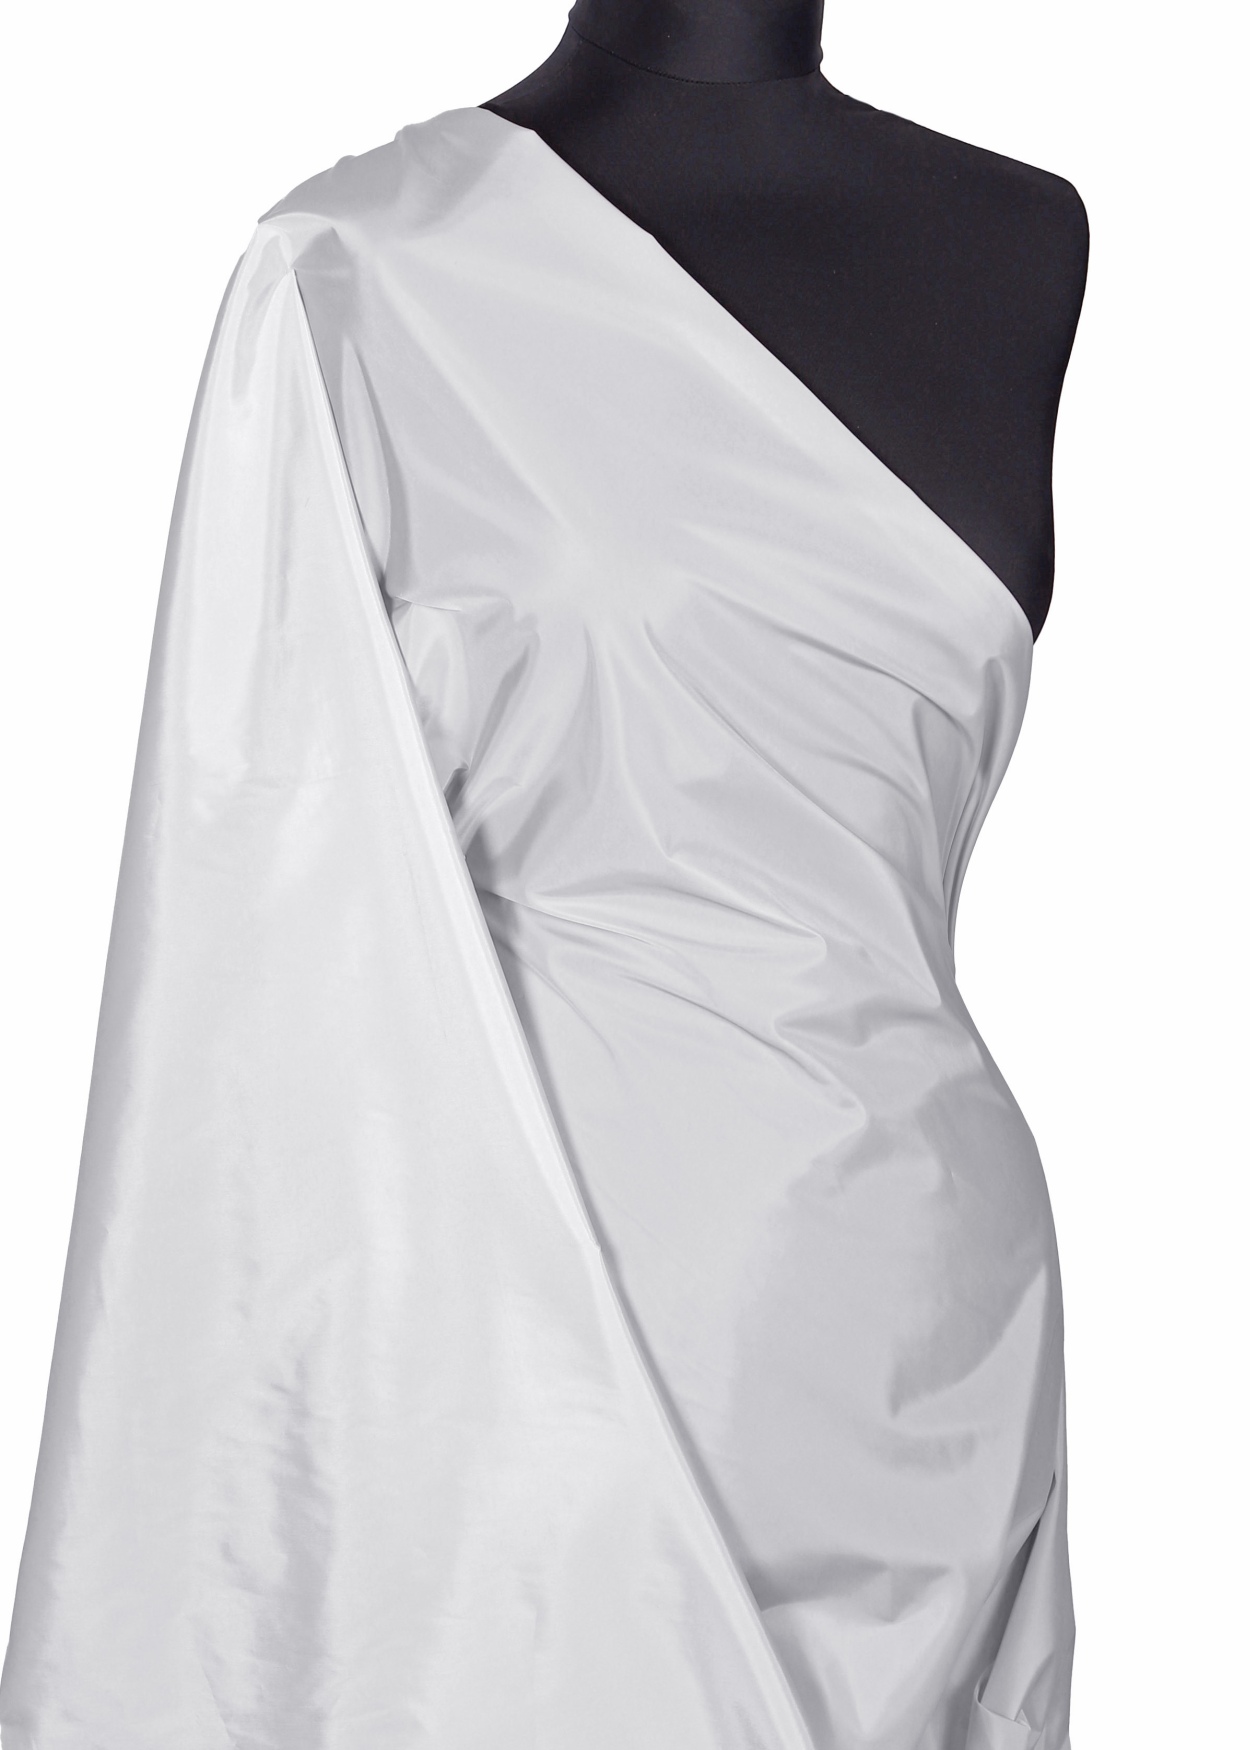 Bundovina Zara 01 biela - Kliknutm na obrzok zatvorte -